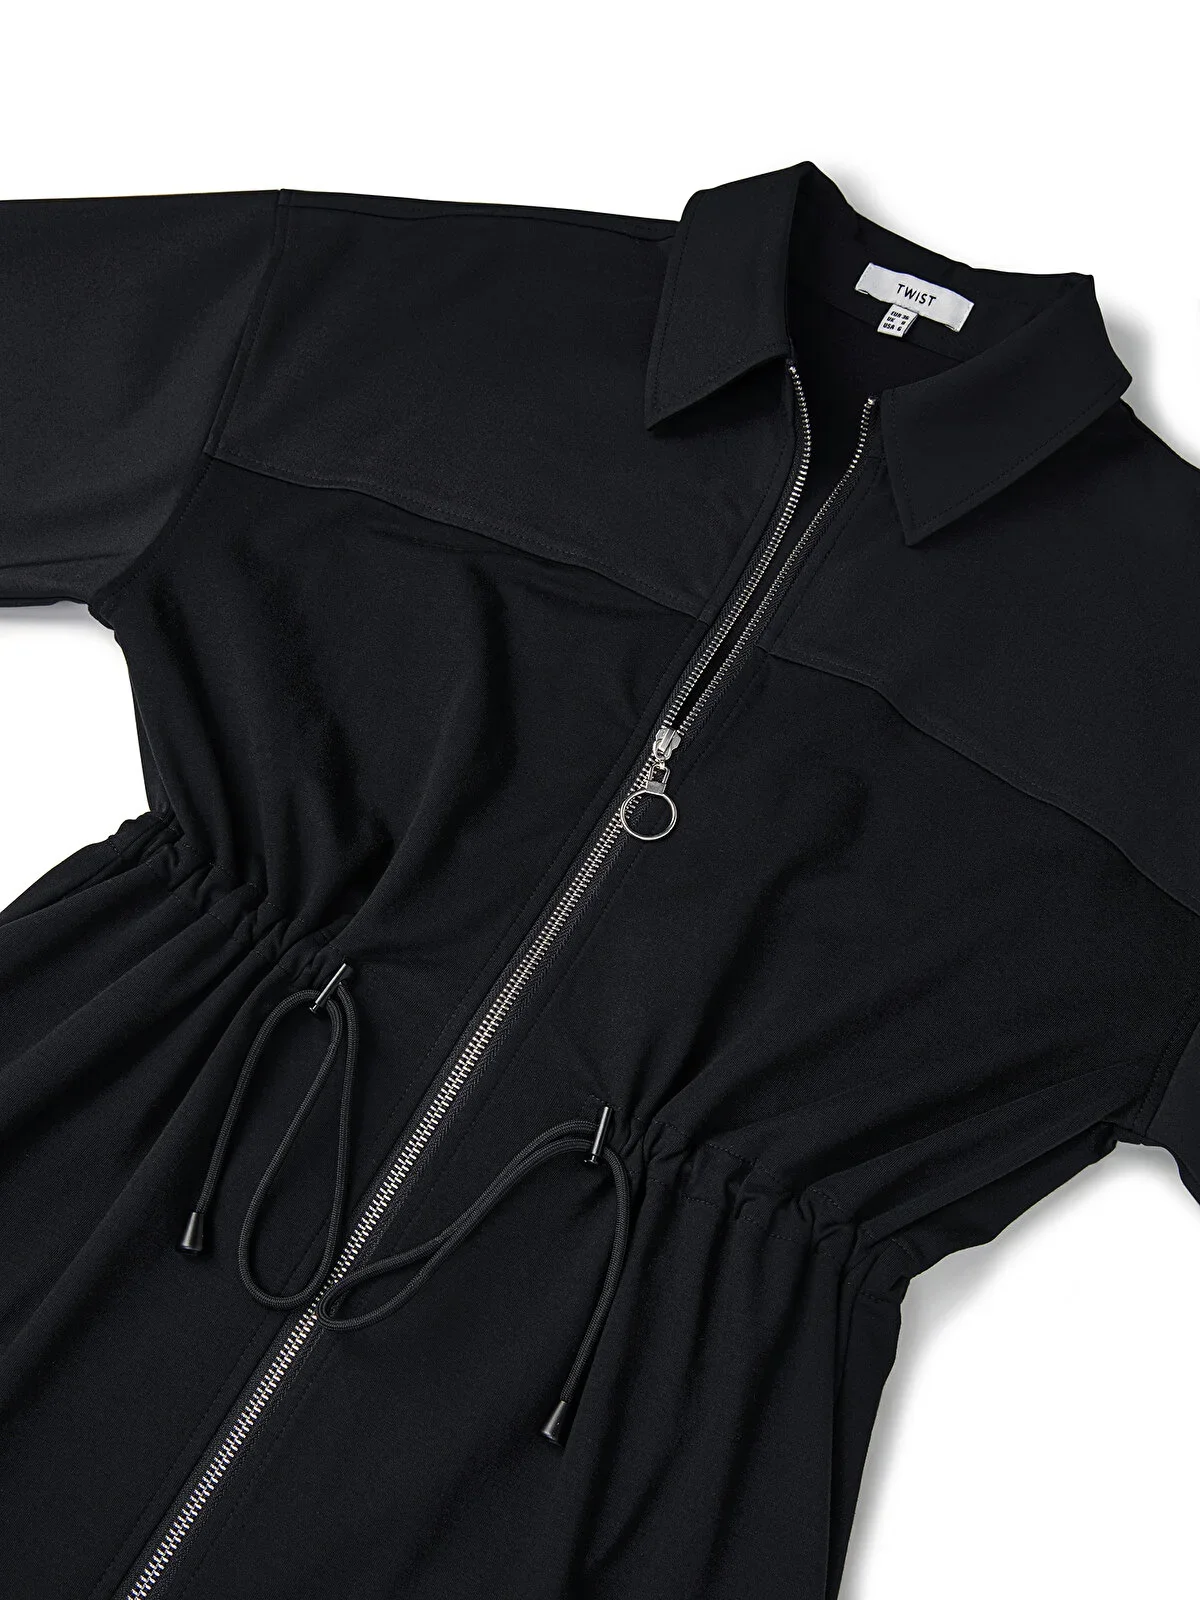 Kadın Kumaş Mix Midi Elbise - Siyah - 6